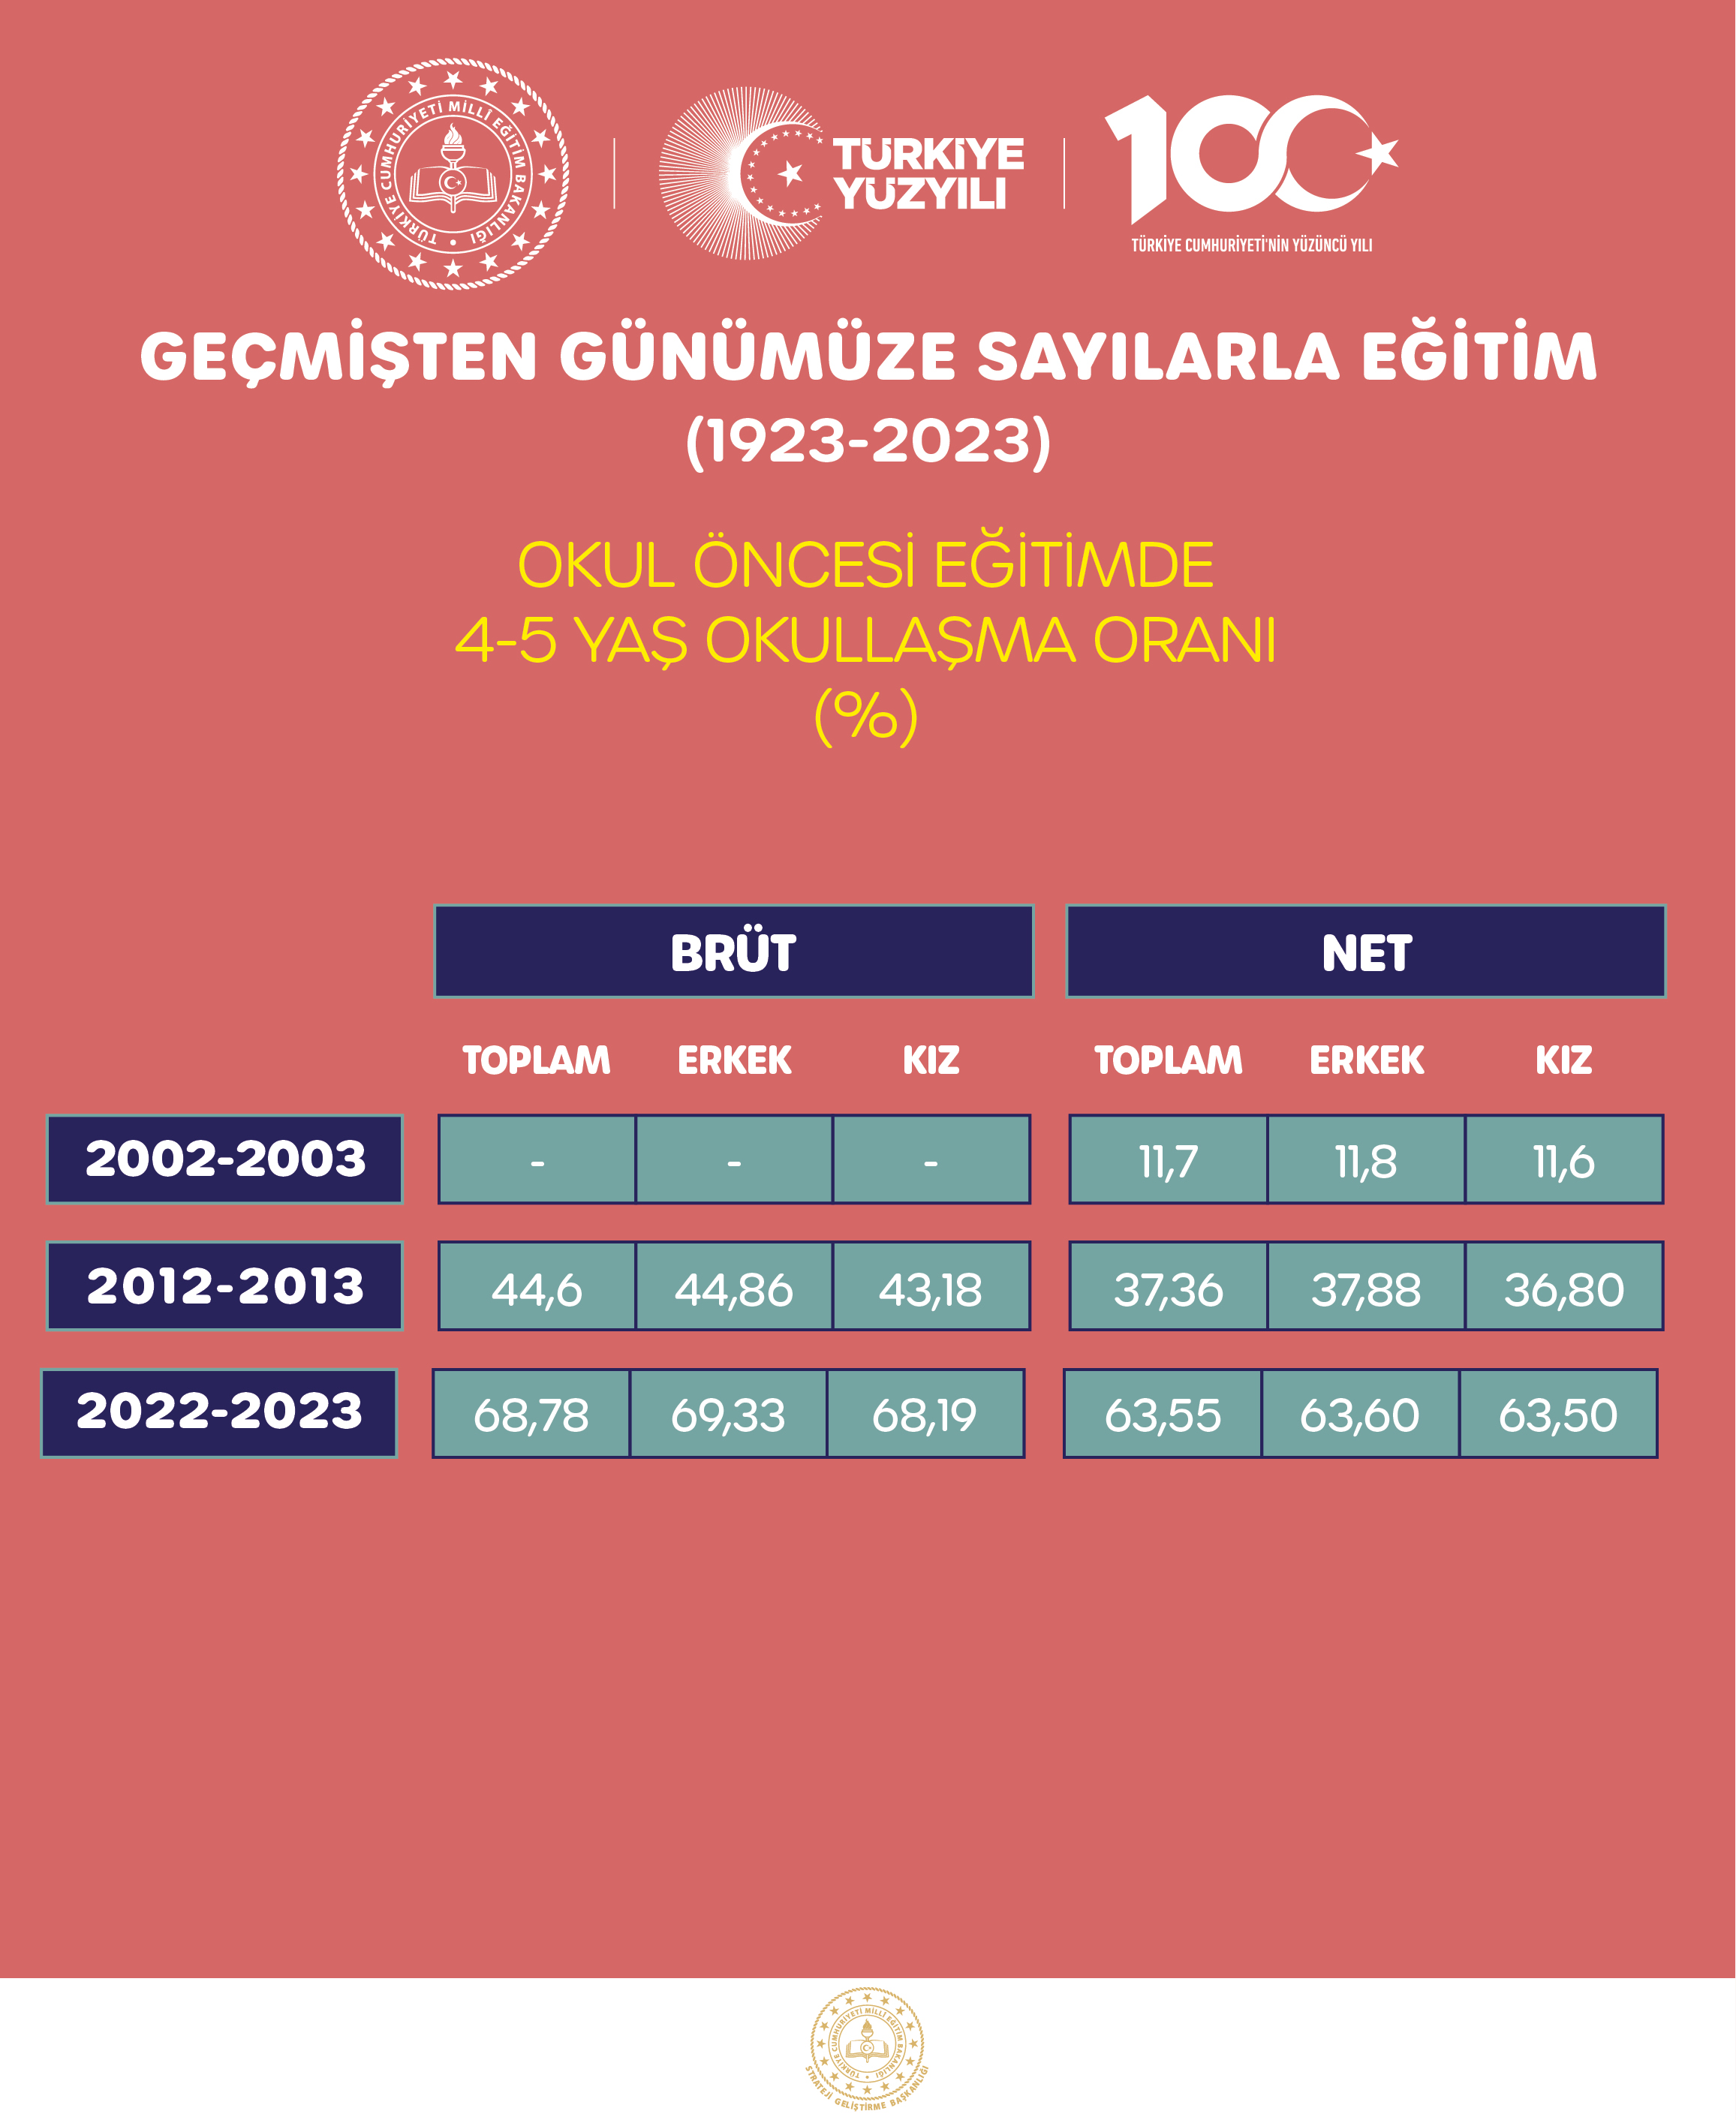 OKUL ÖNCESİ EĞİTİMDE 4-5 YAŞ OKULLAŞMA ORANI (%)